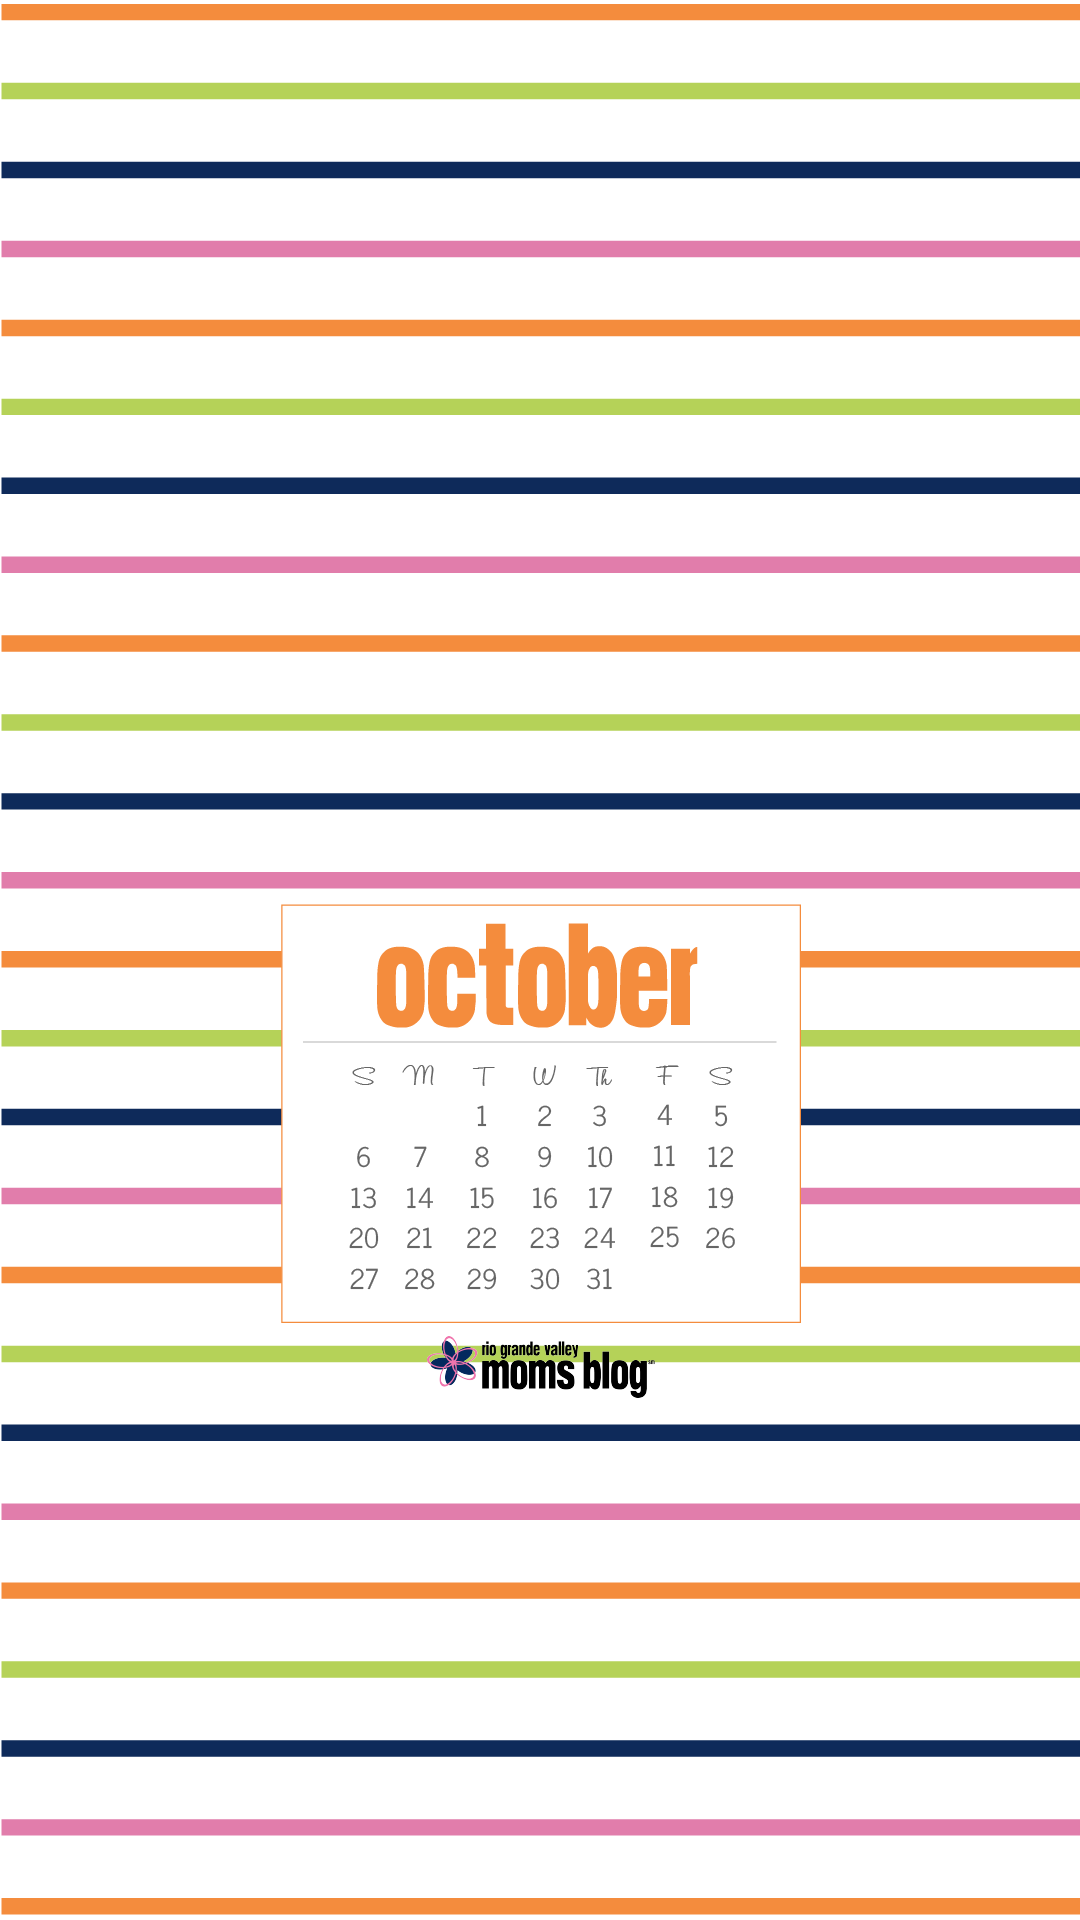 RGVMB October 2019 - Calendar - Stripes